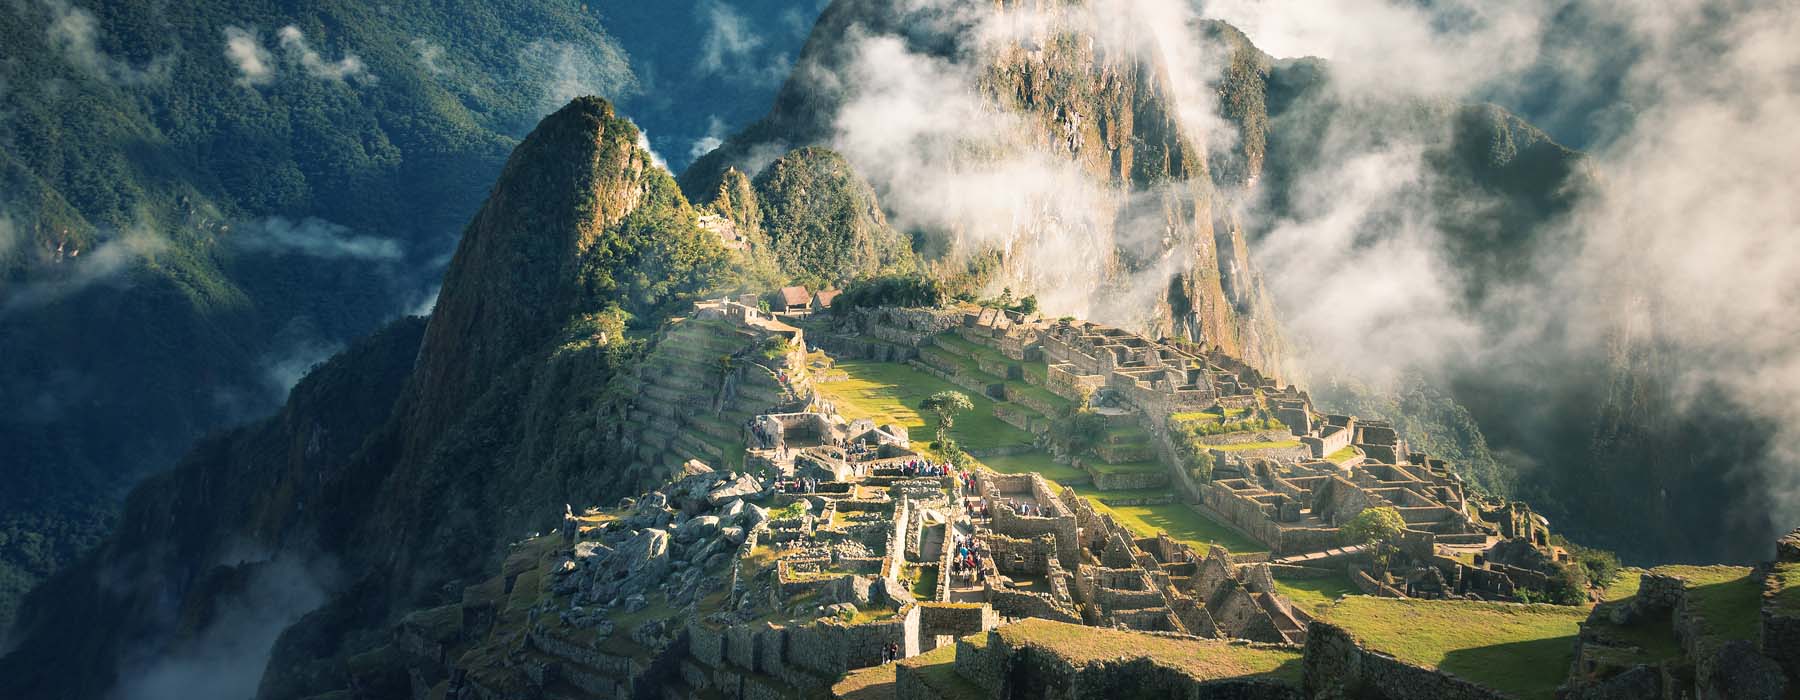 Peru<br class="hidden-md hidden-lg" /> Tours